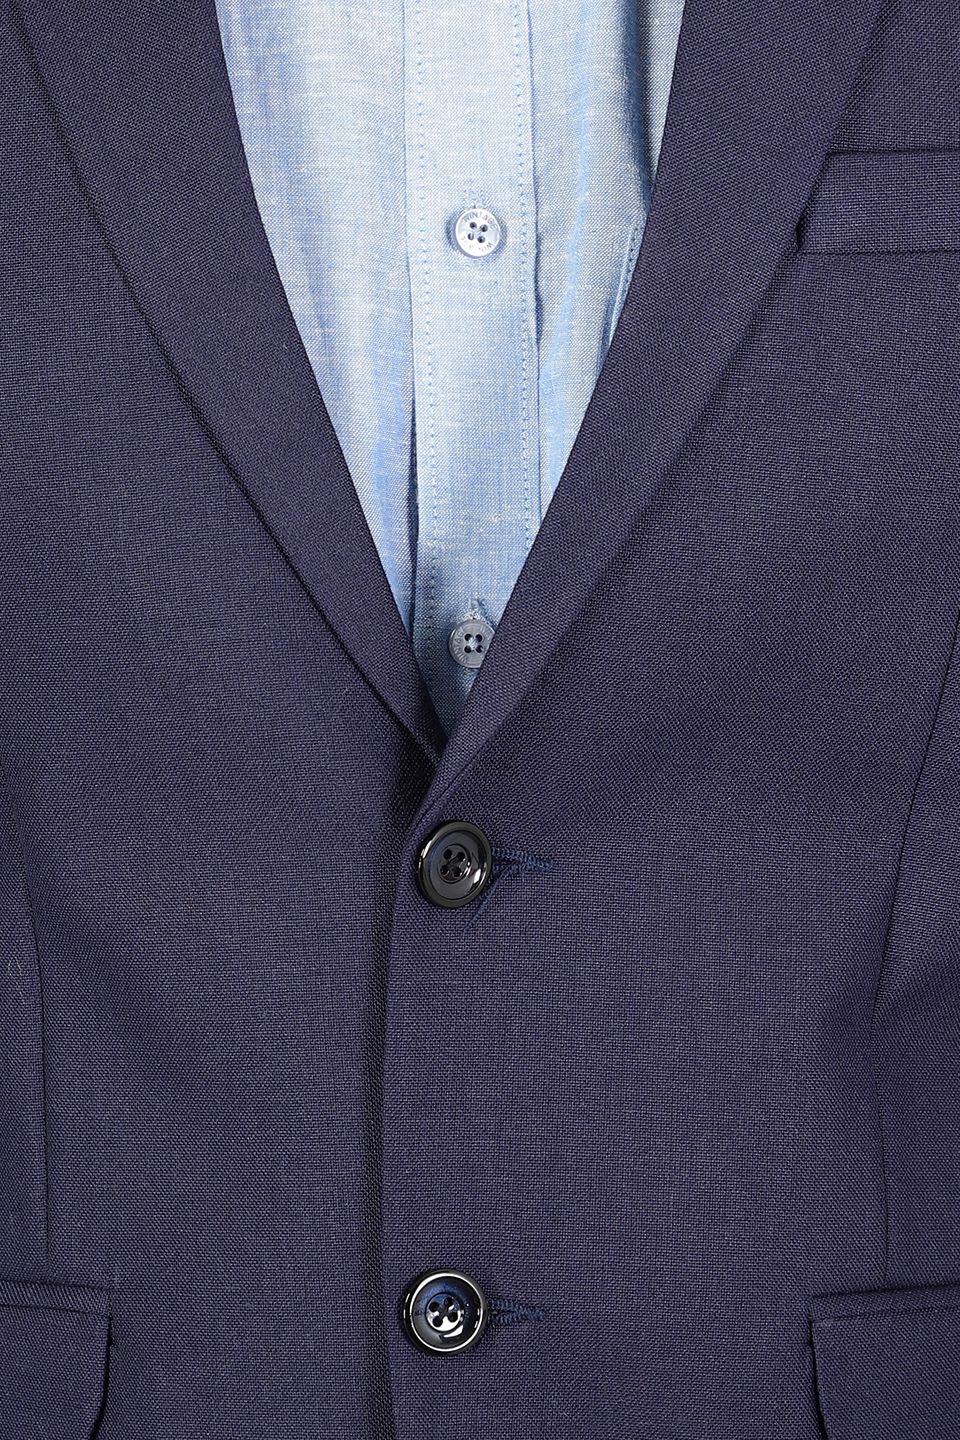 Polyester Cotton Plain Blue Two Piece Suit